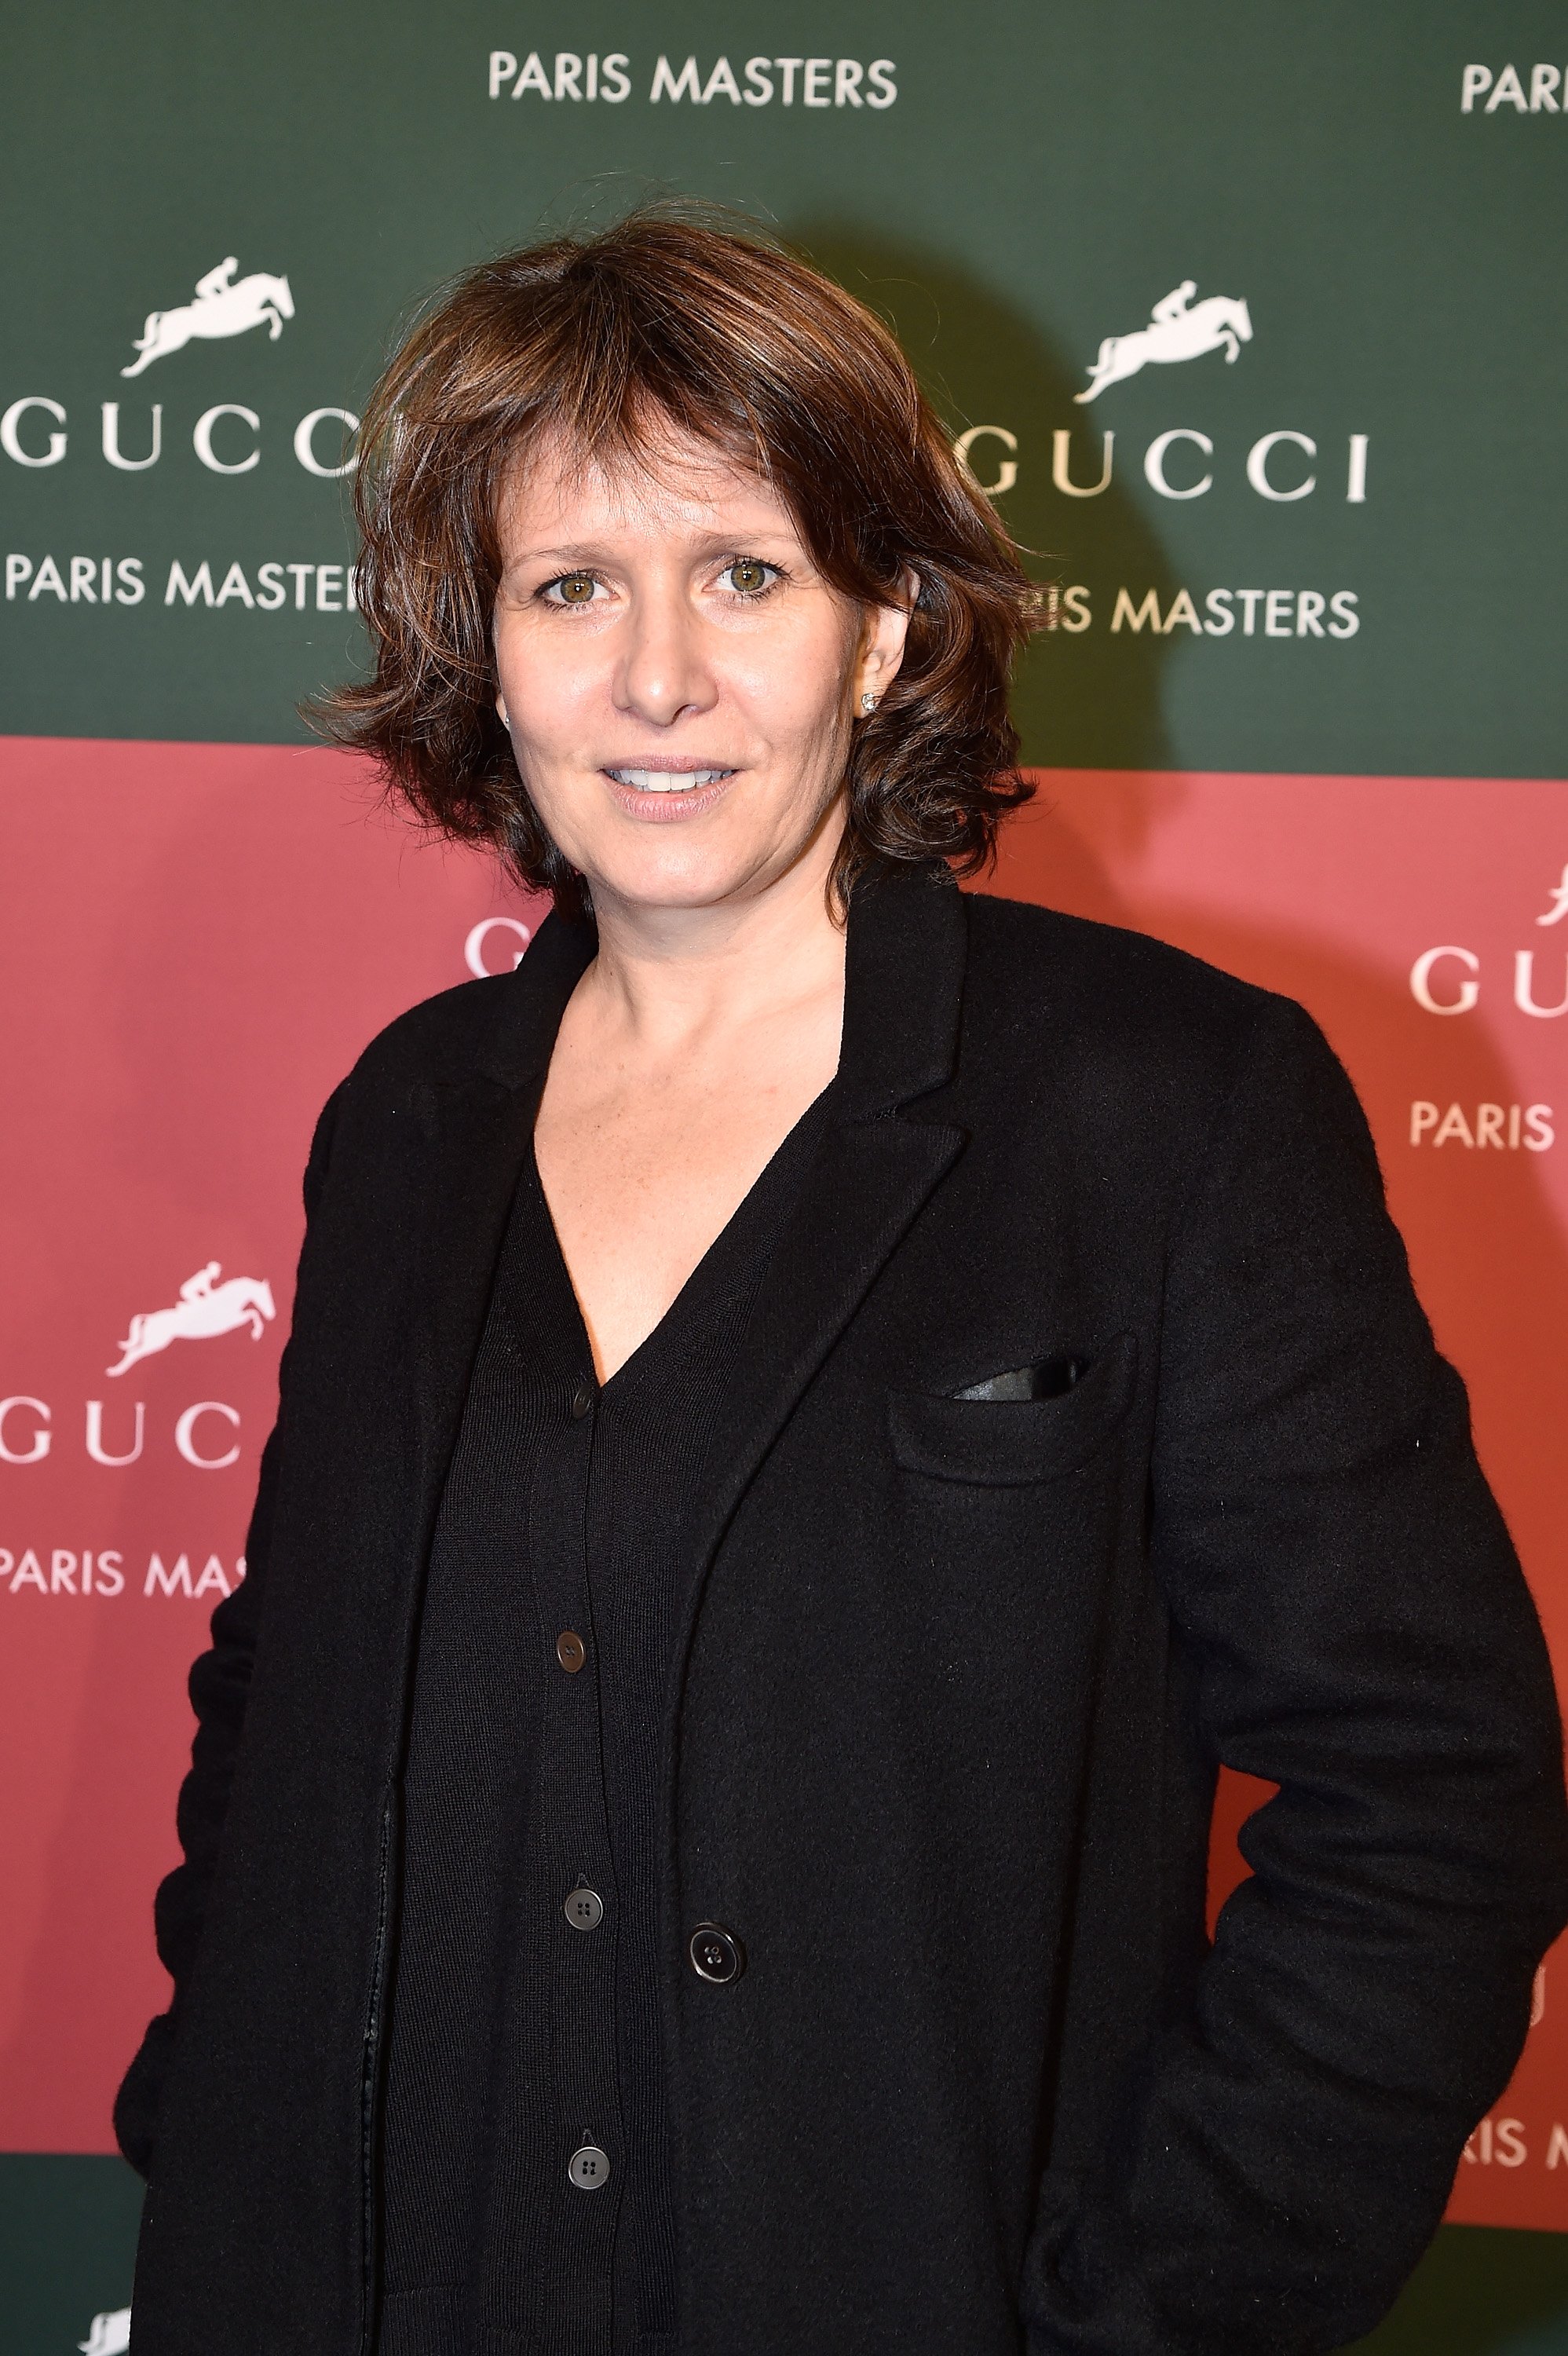 Carole Rousseau assiste à la deuxième journée des Gucci Paris Masters 2014 le 5 décembre 2014 à Villepinte, France. | Photo : Getty Images